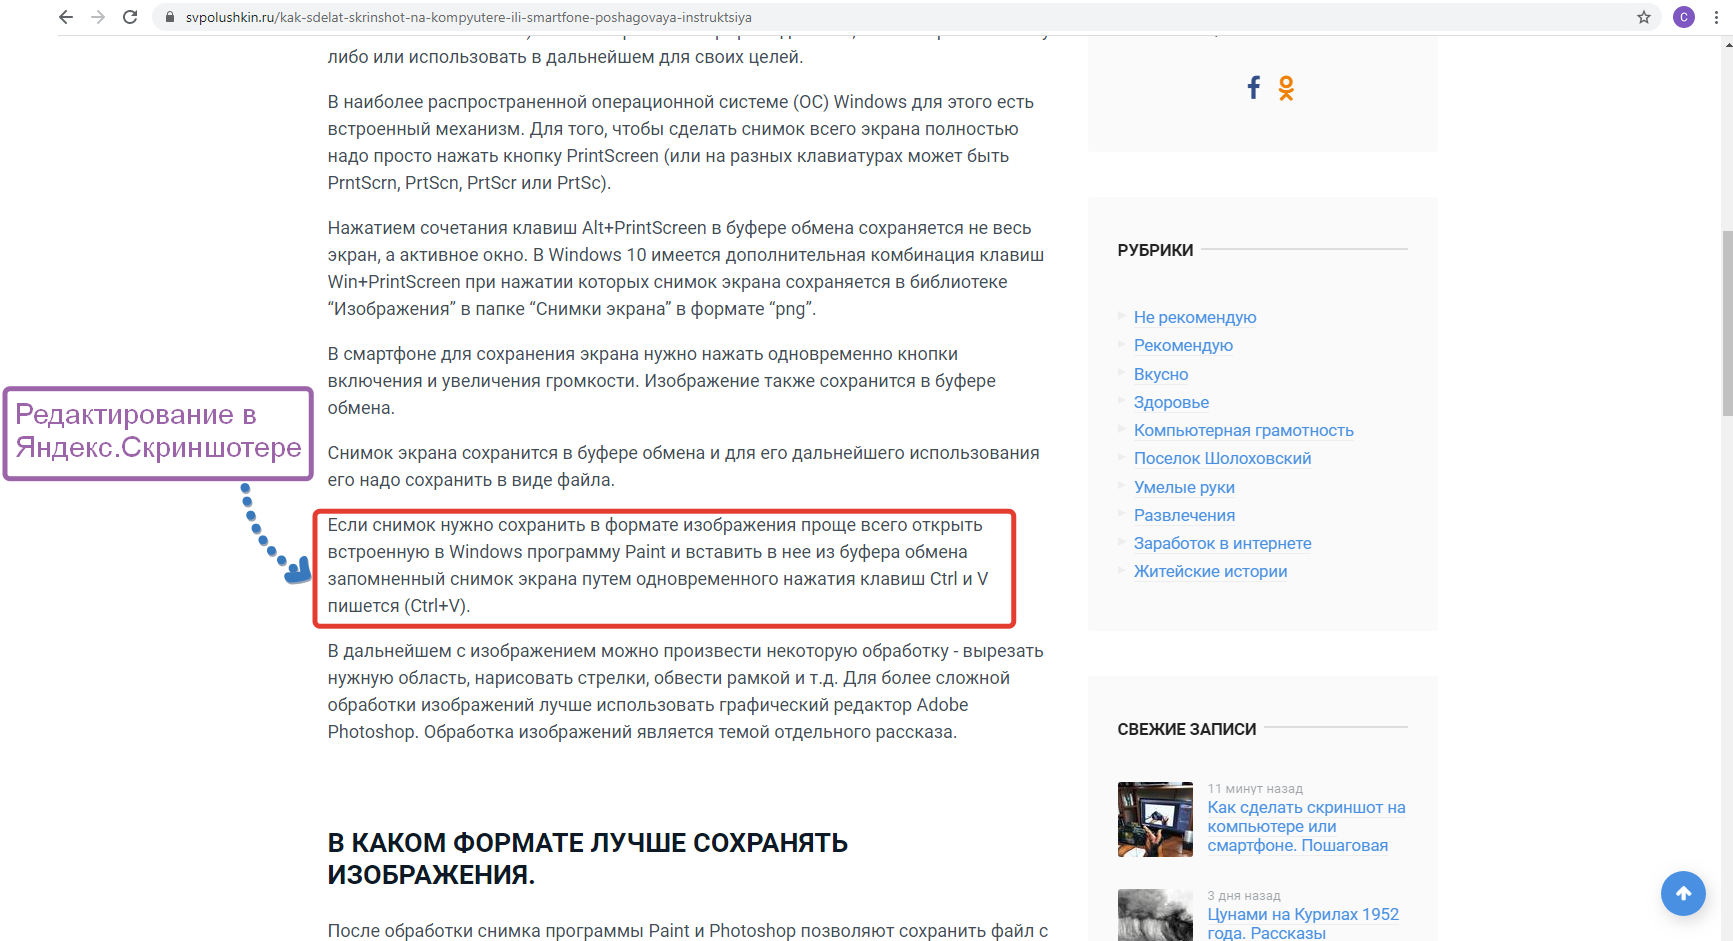 Пример редактирования изображения в Яндекс.скриншотере